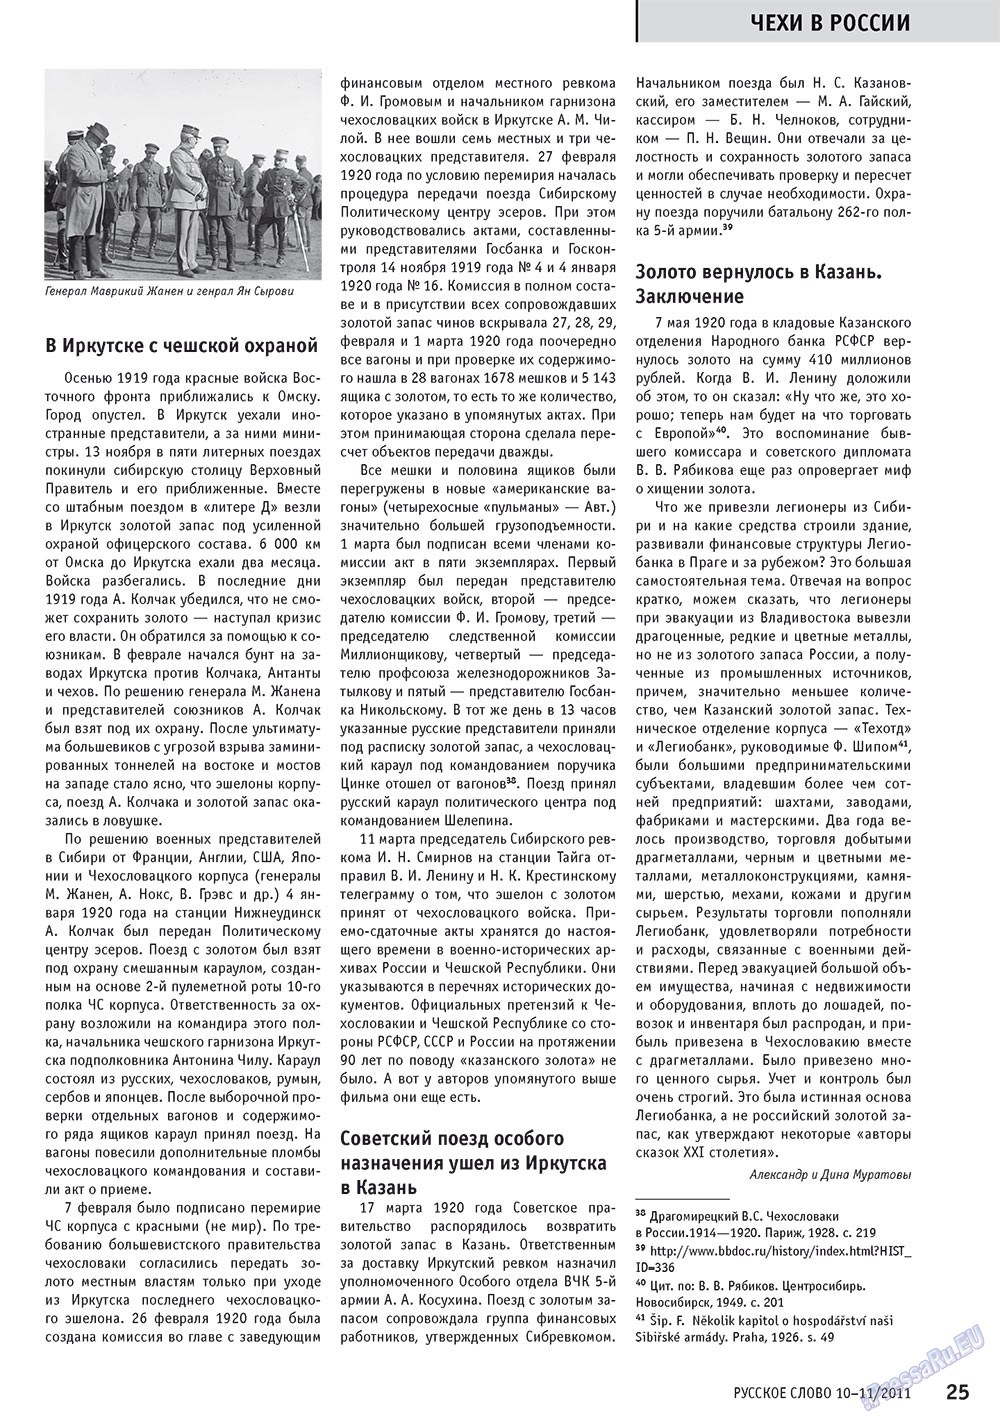 Русское слово, журнал. 2011 №10 стр.27